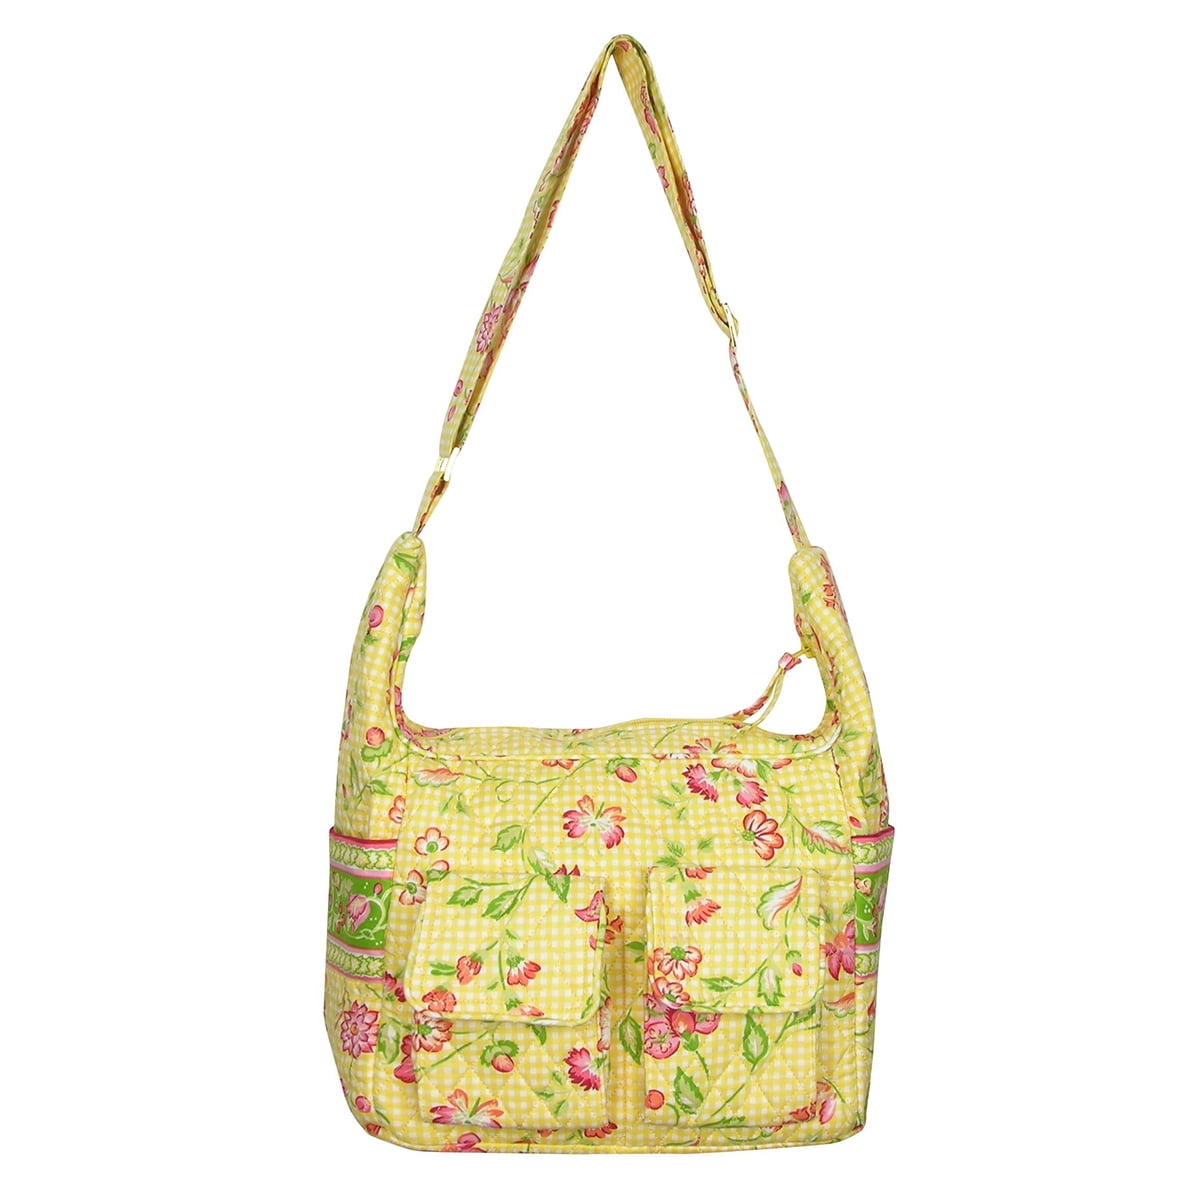 Portofino Womens Shoulder Handbag